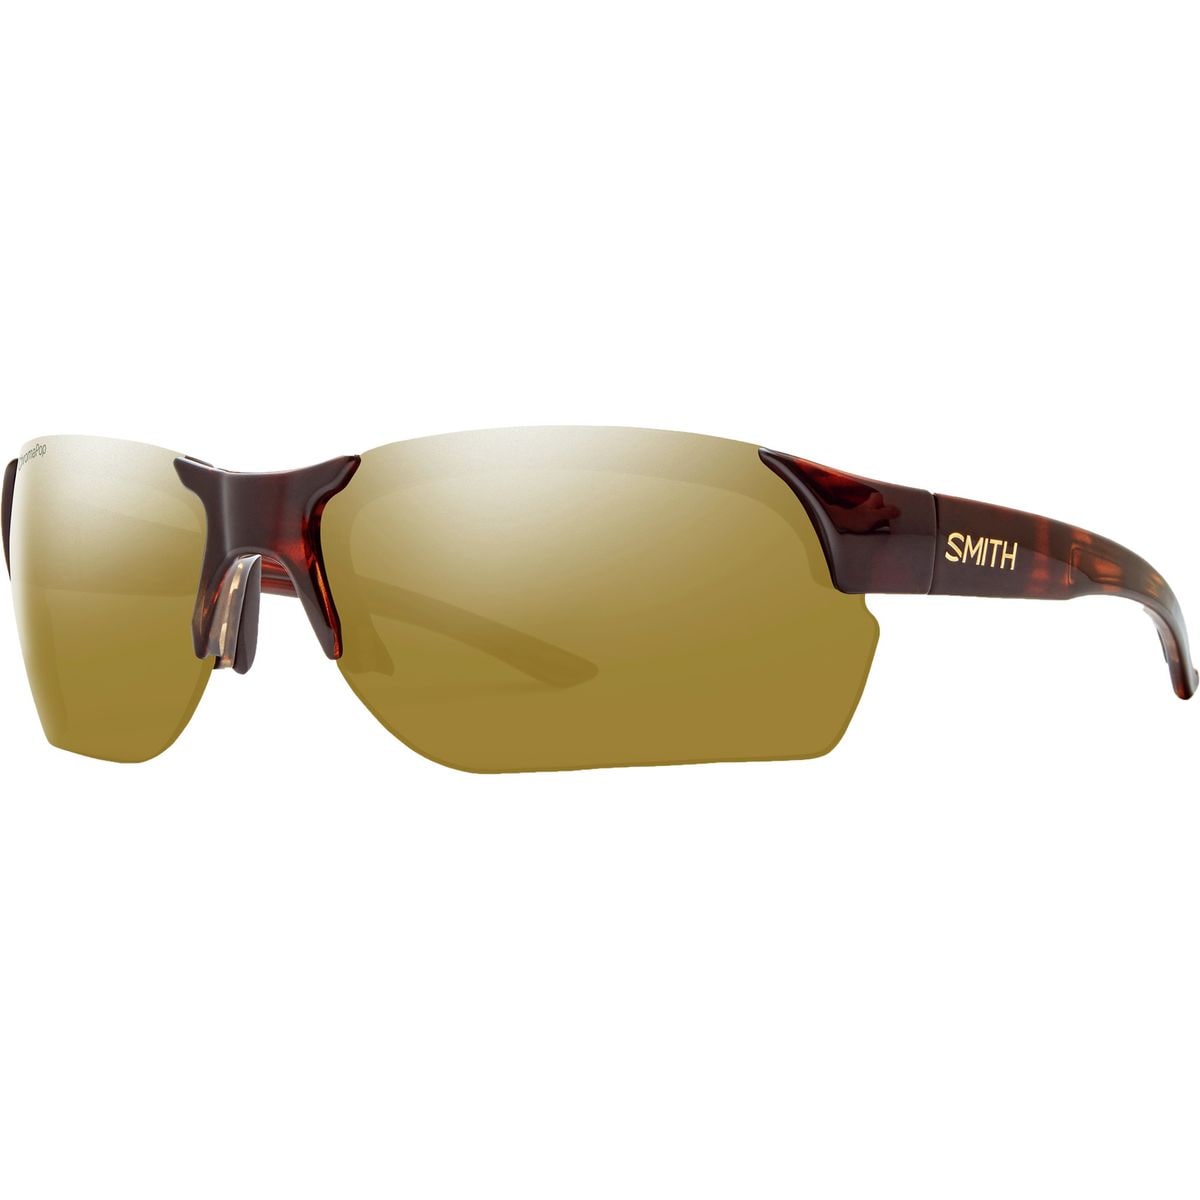 Smith Envoy Max ChromaPop Sunglasses Polarized Men's